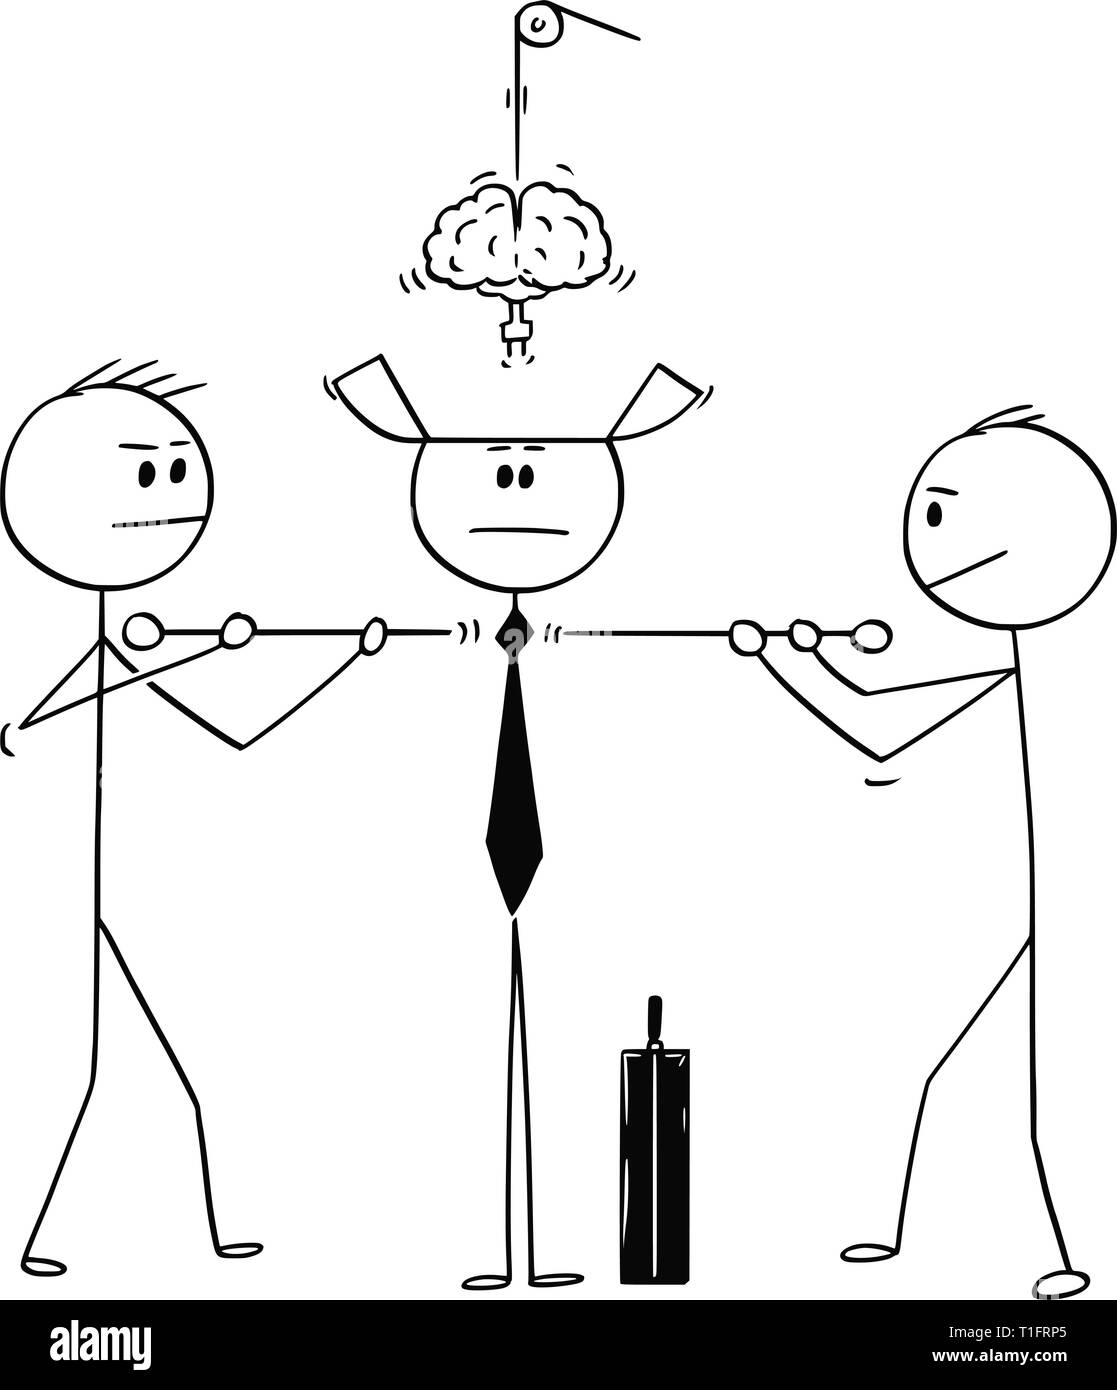 Cartoon Strichmännchen Zeichnung konzeptuelle Abbildung von zwei Techniker konstruieren oder Zusammenfügen Geschäftsmann oder Politiker von Teilen. Stock Vektor